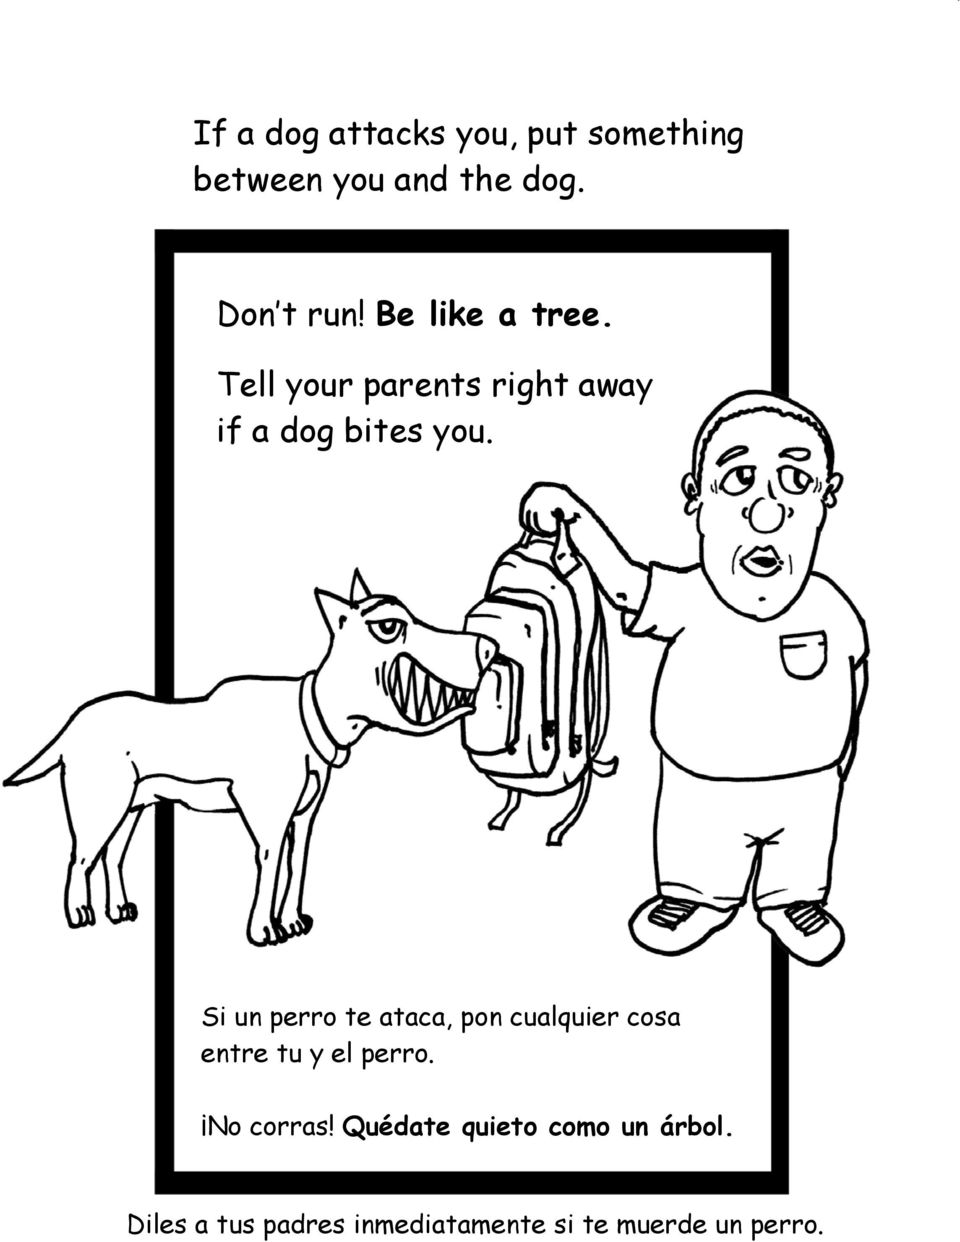 Si un perro te ataca, pon cualquier cosa entre tu y el perro. No corras!